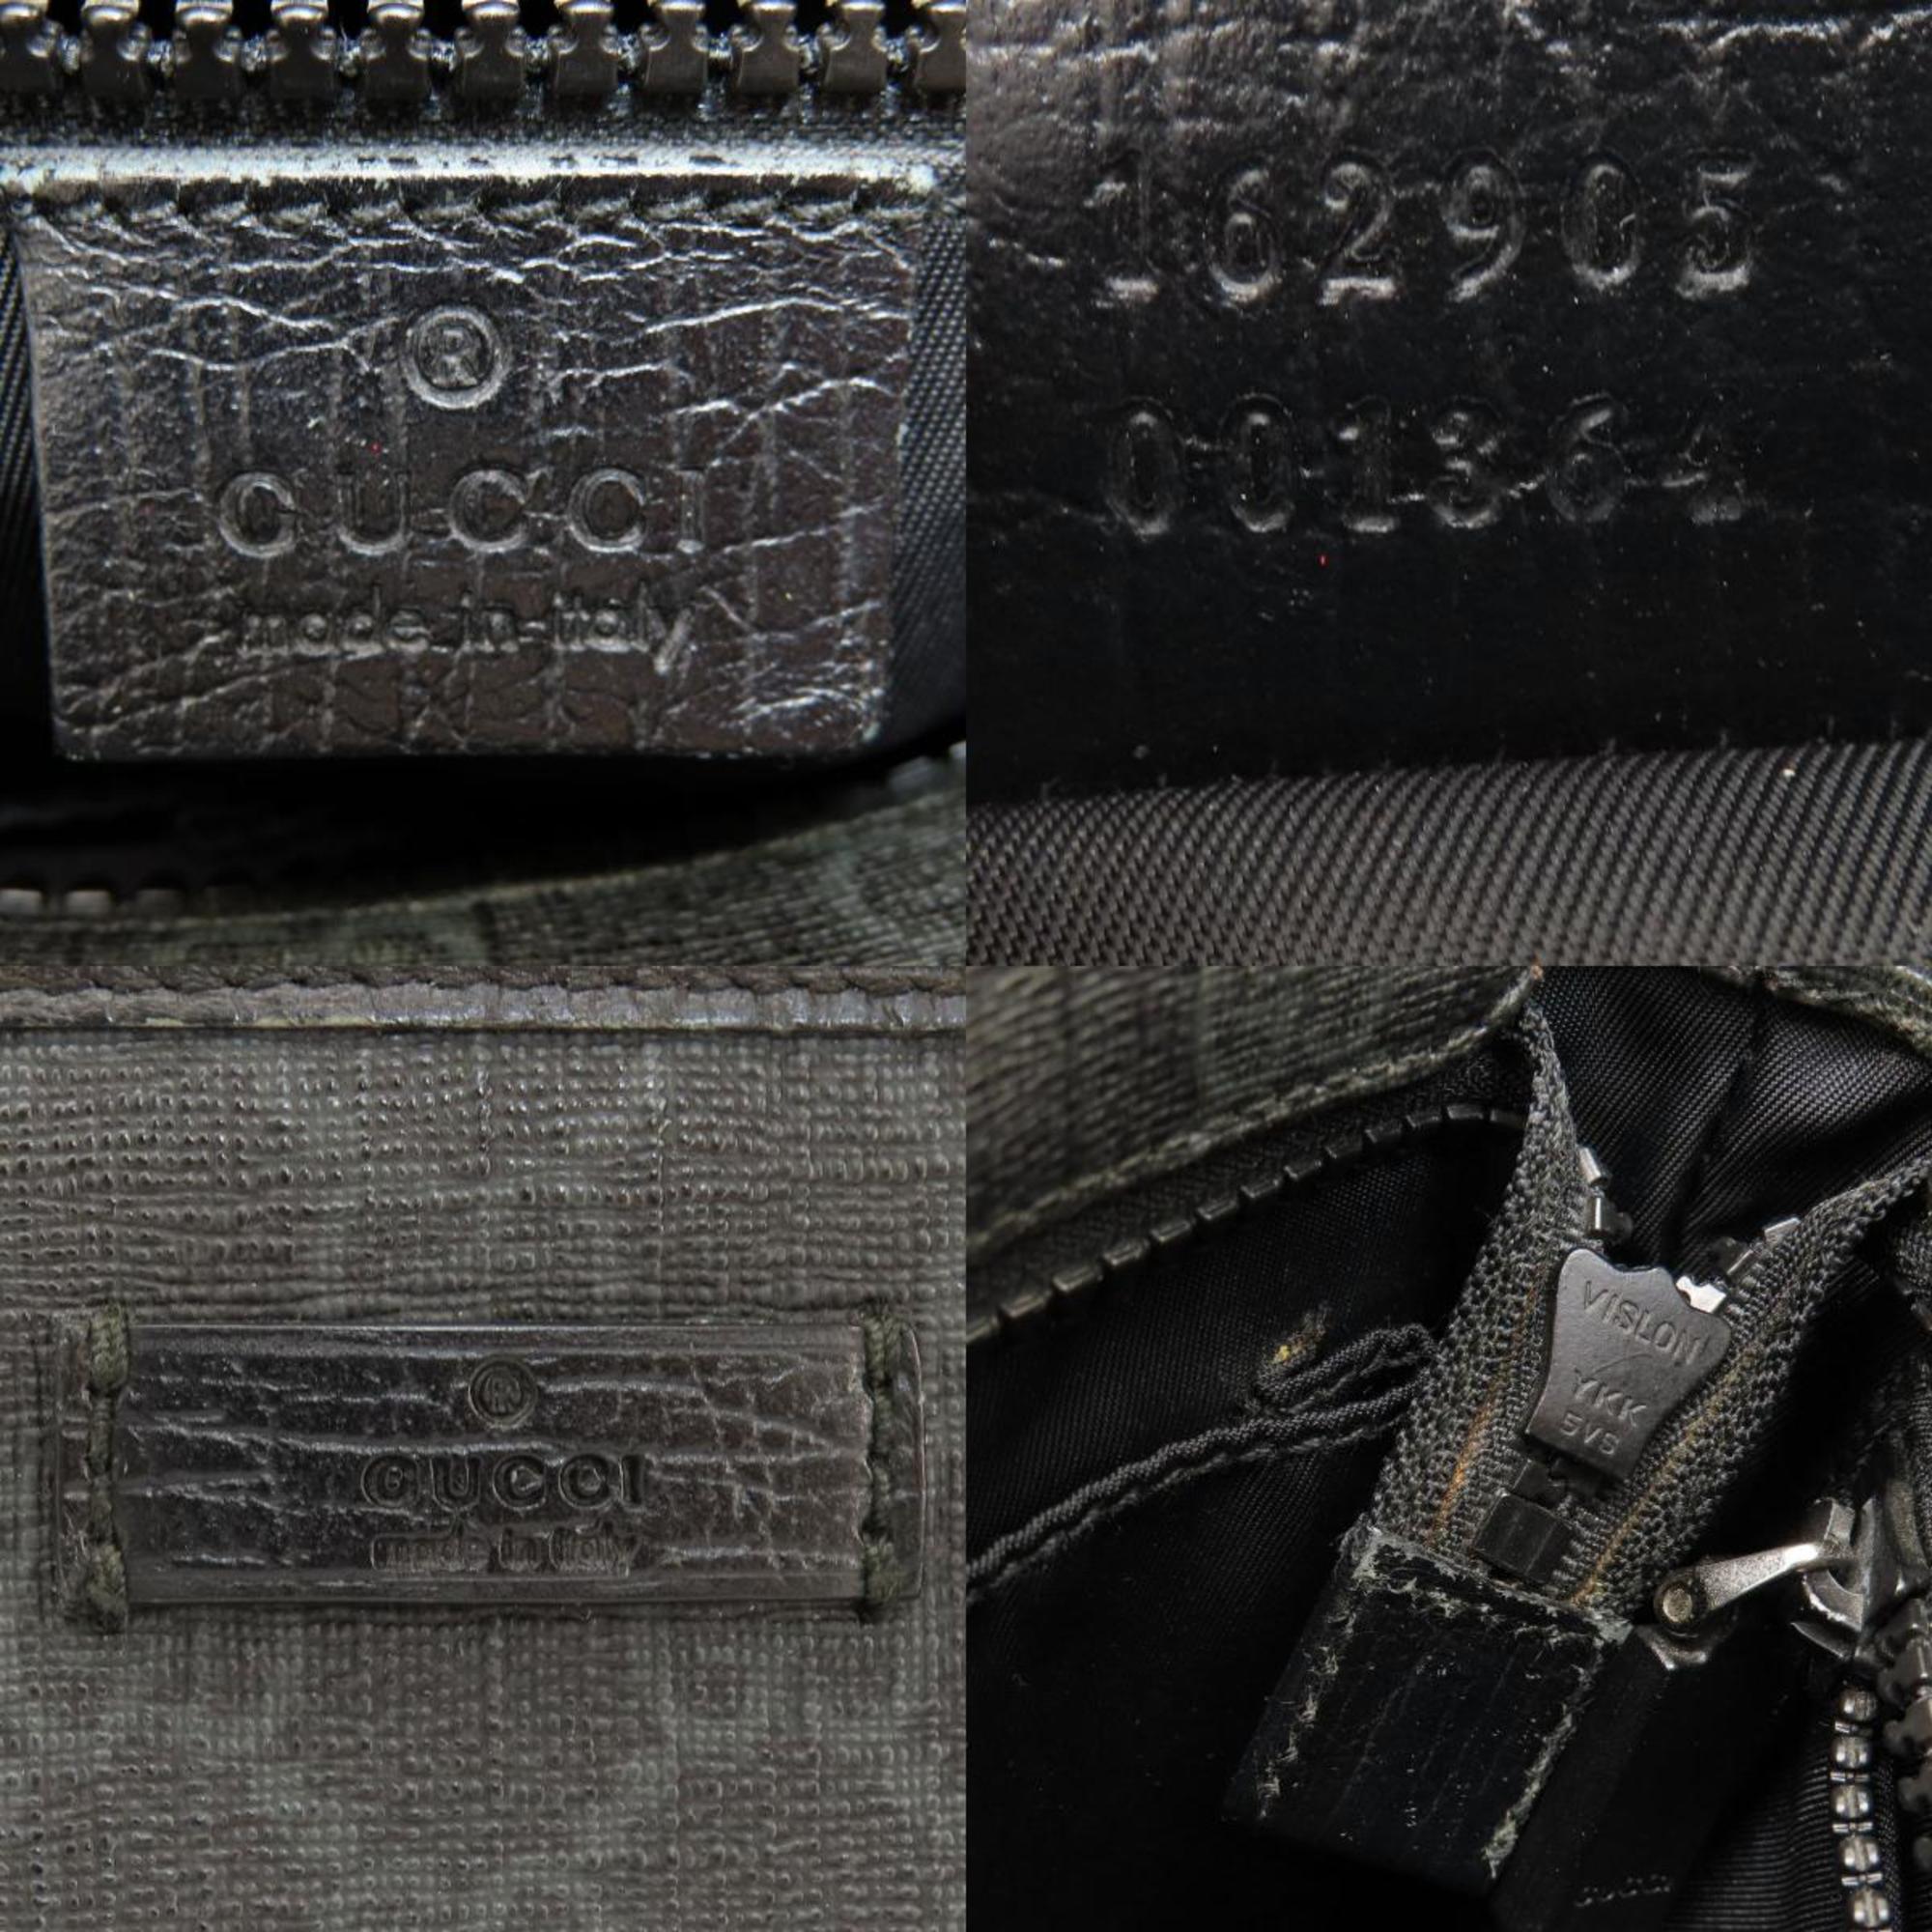 Gucci 162905 GG Supreme Shoulder Bag for Women